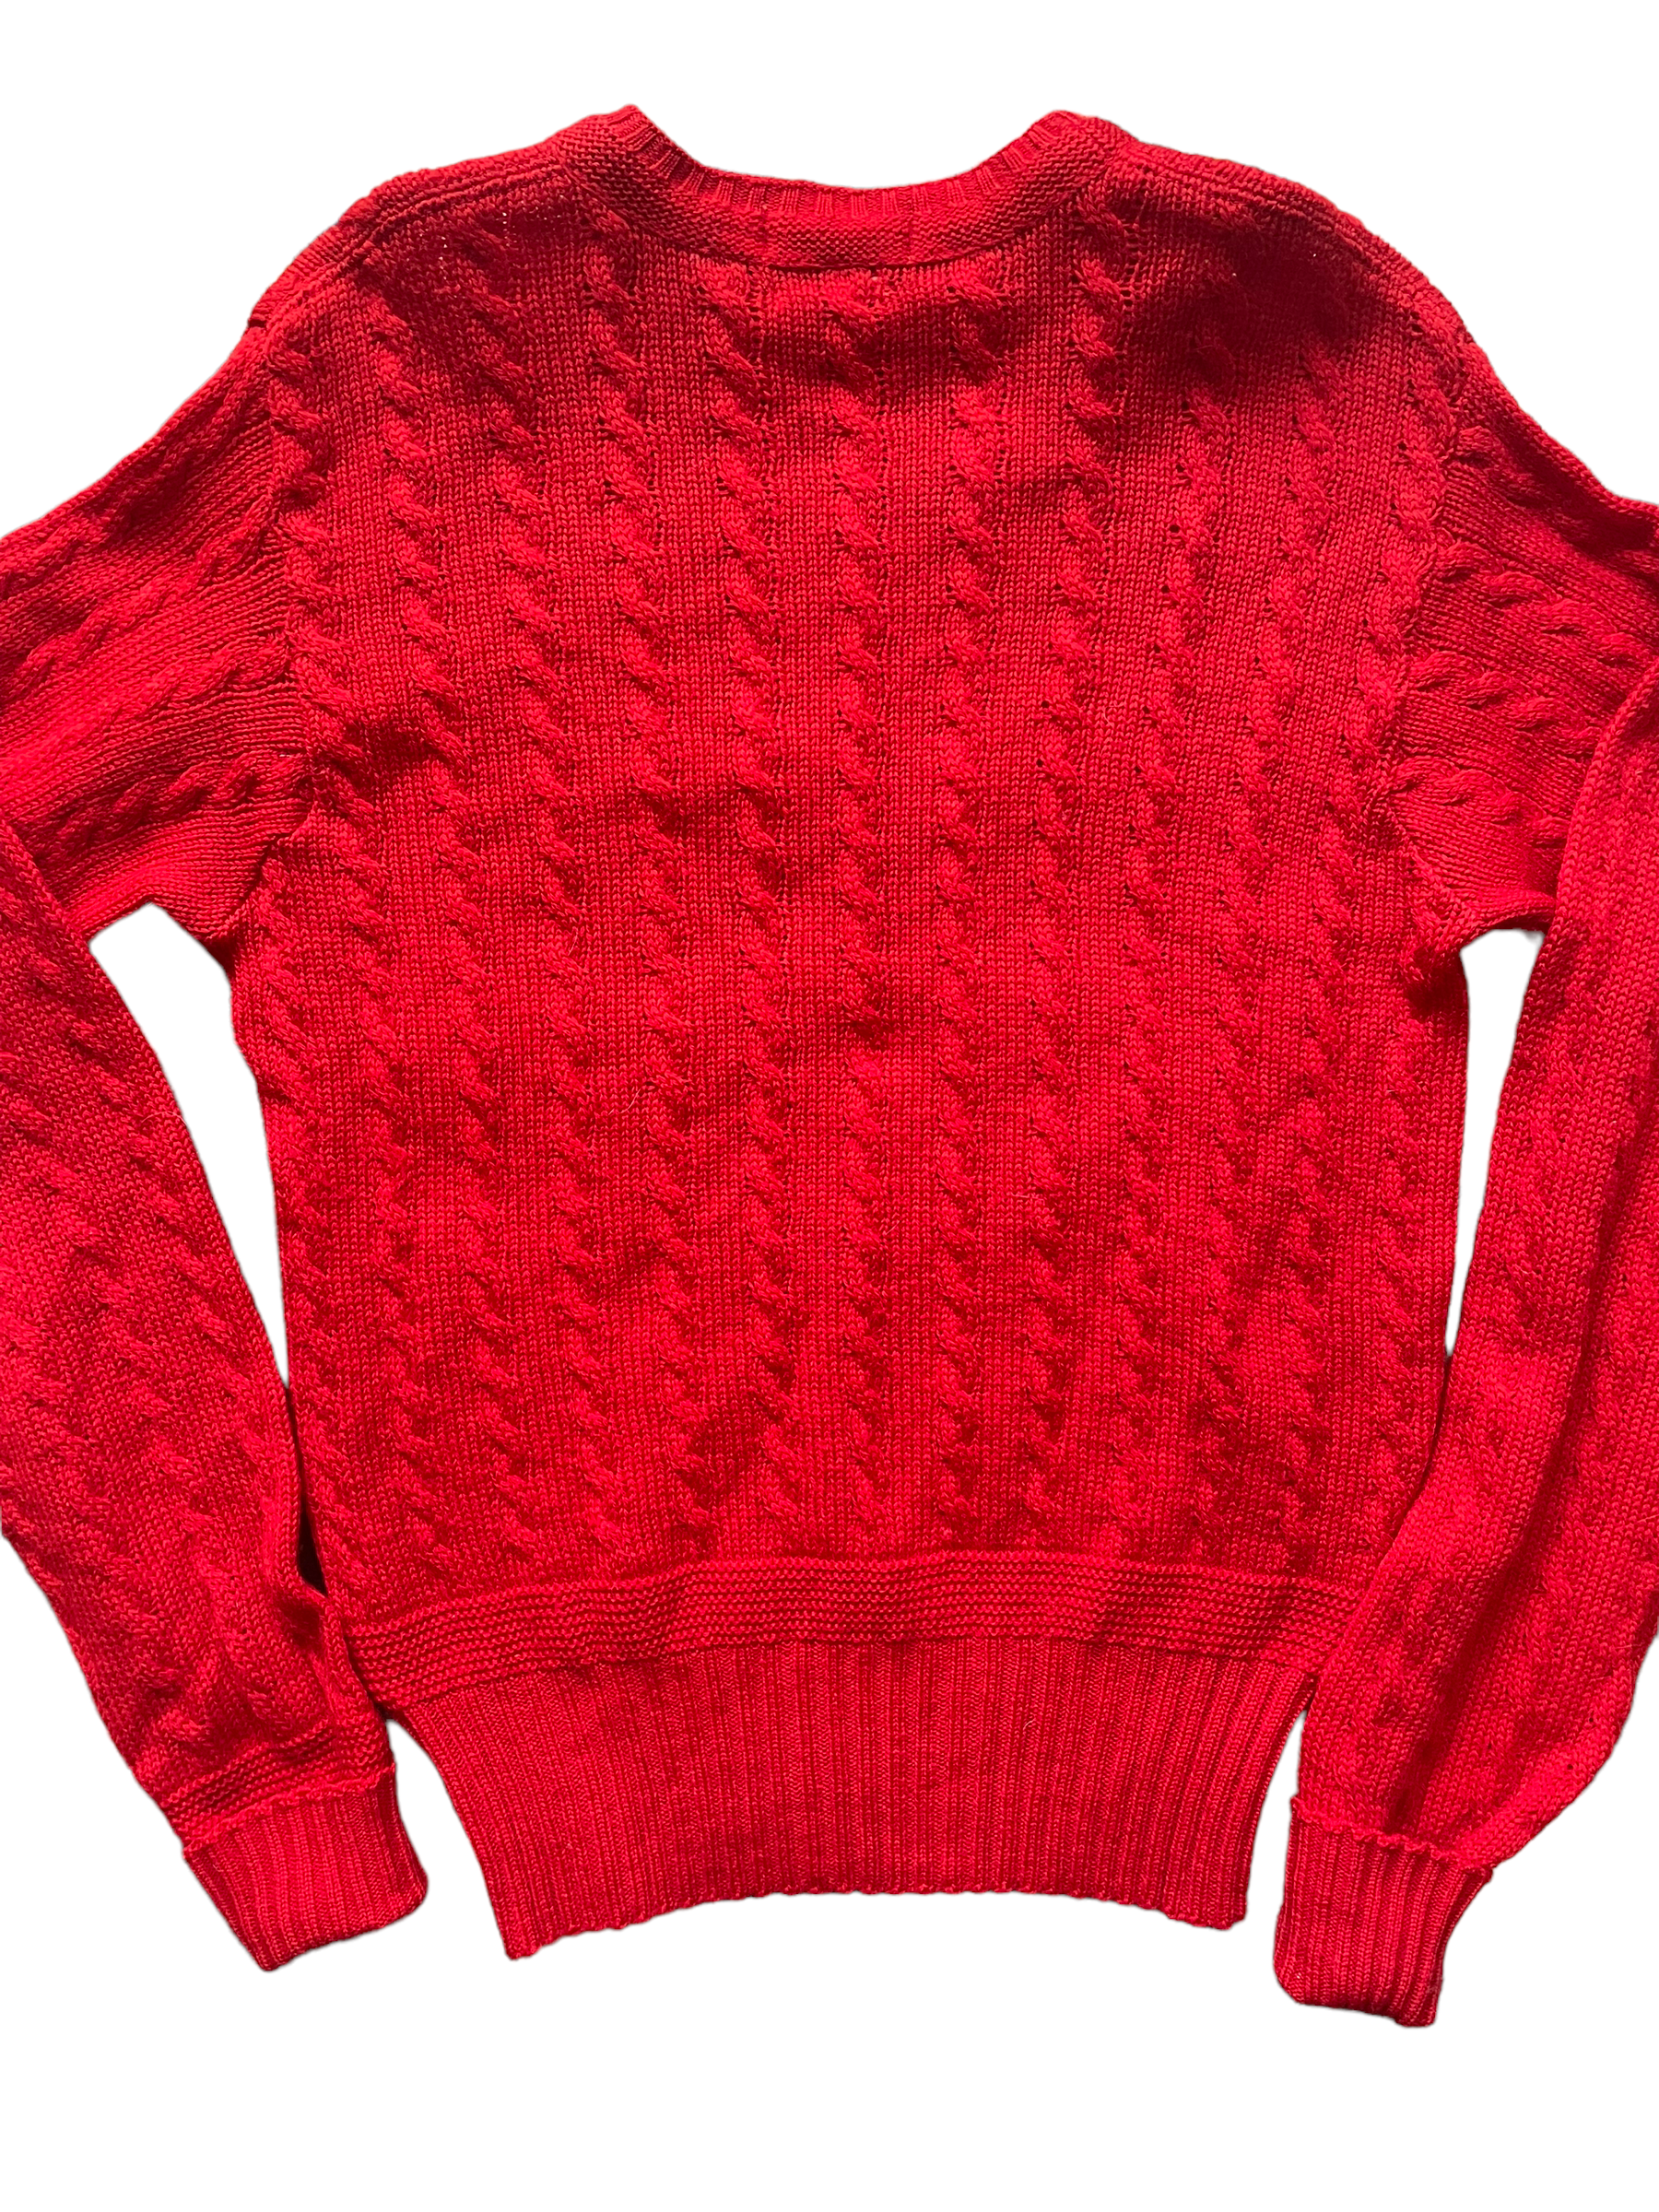 Vintage 1950s Jantzen Cable Knit Wool Sweater | Barn Owl Seattle | Seattle Vintage Sweaters Full back veiw.